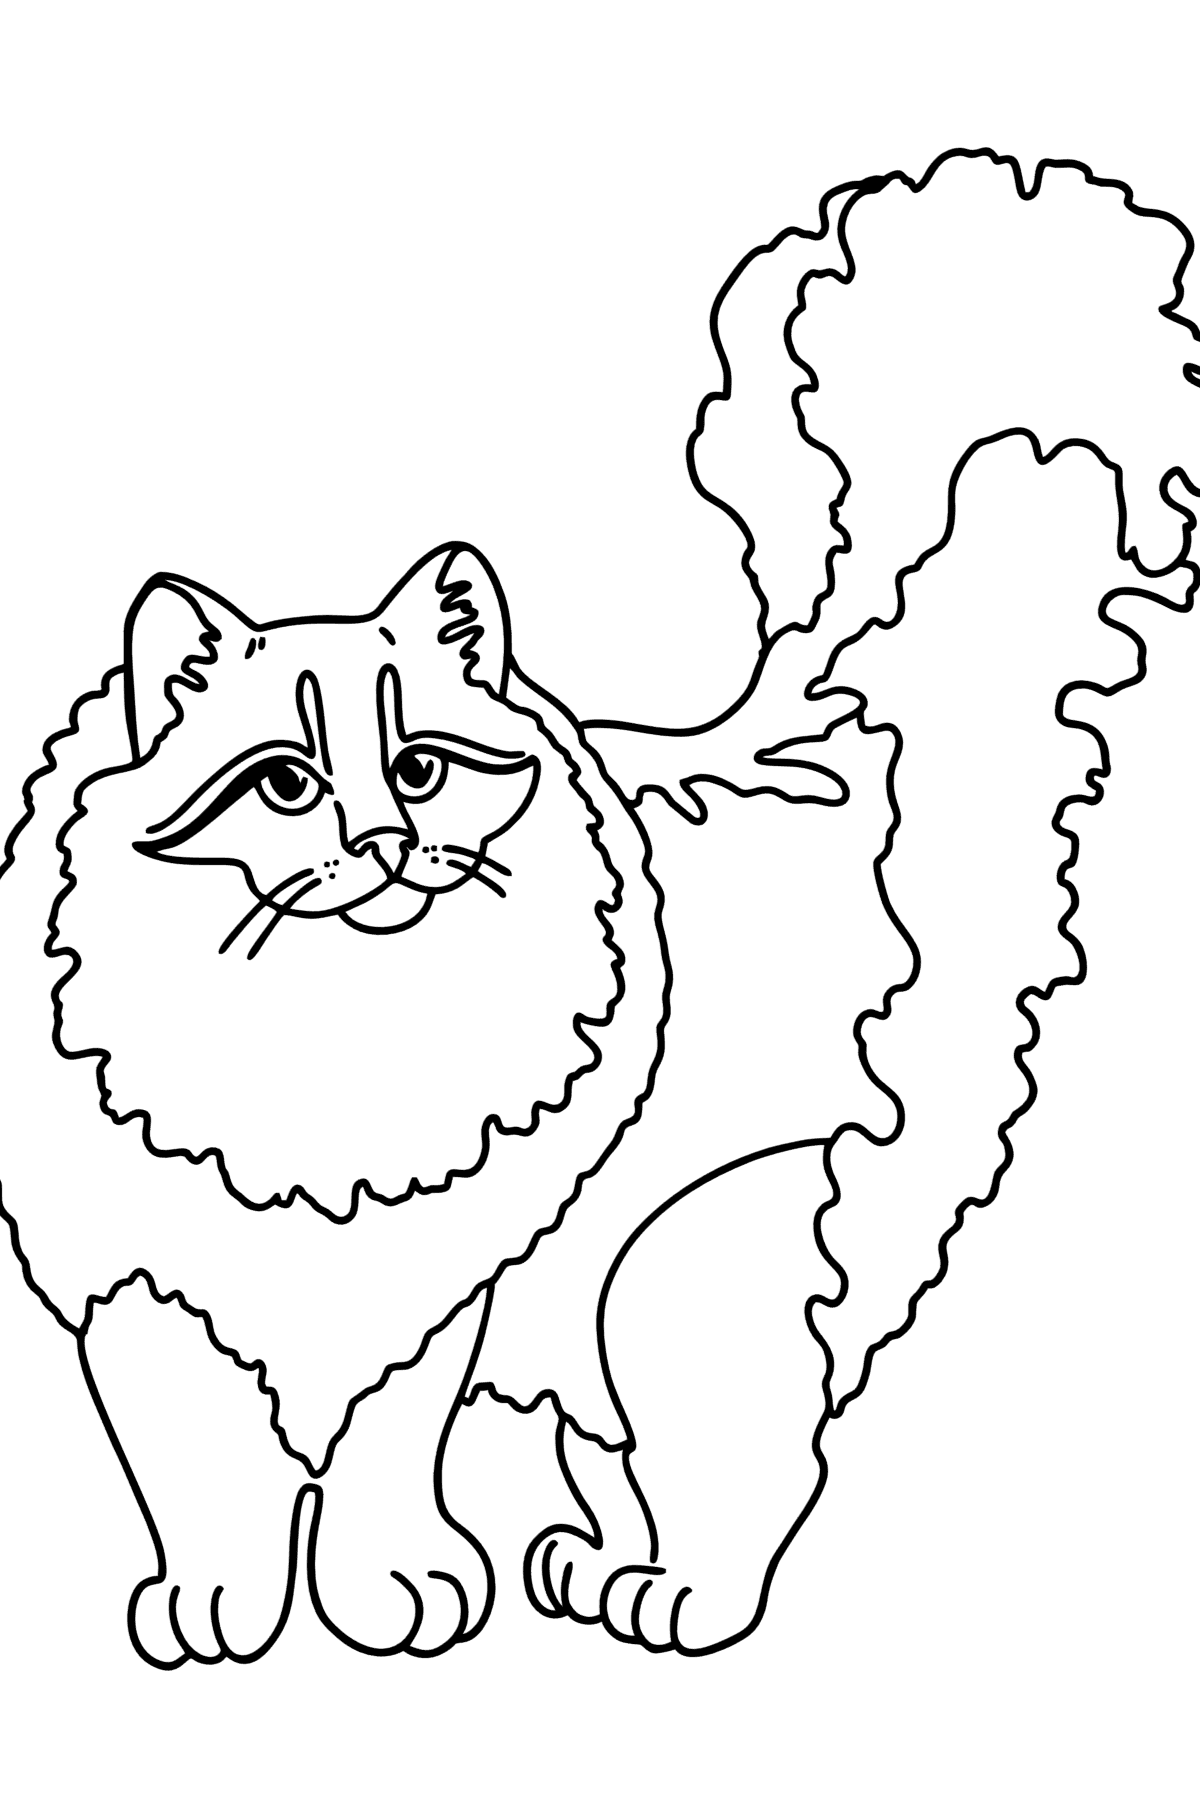 Dibujo de gato siberiano para colorear - Dibujos para Colorear para Niños